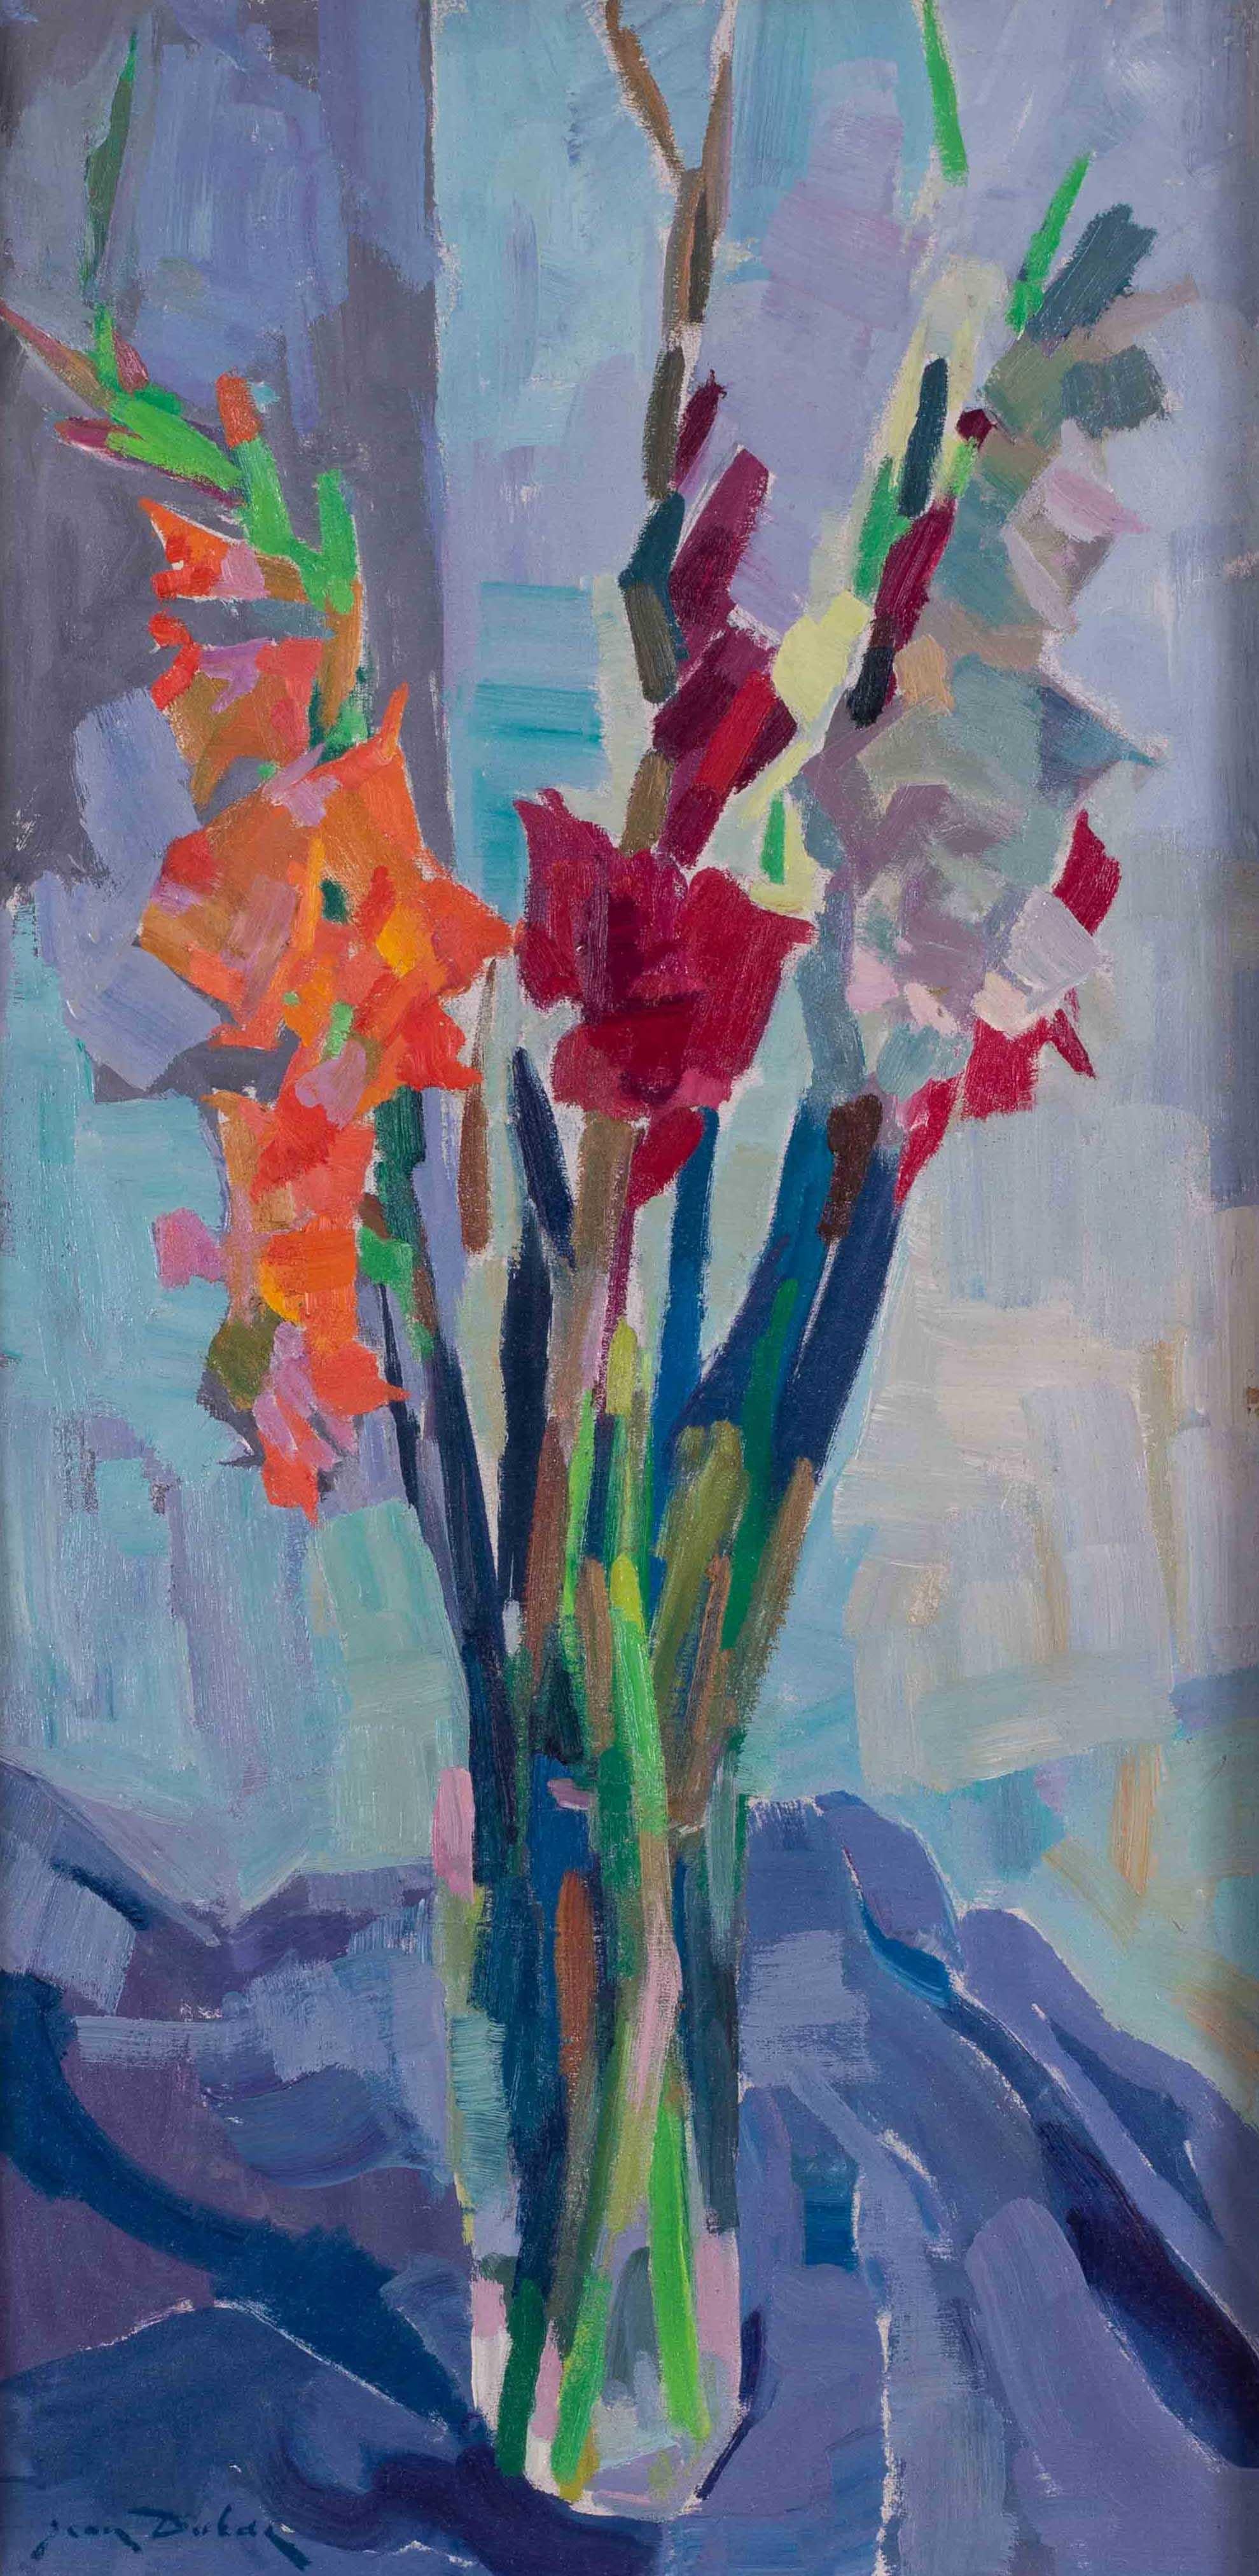 Postimpressionistisches französisches Stillleben mit einer Vase mit roten und orangefarbenen Gladiolen – Painting von Jean Dulac